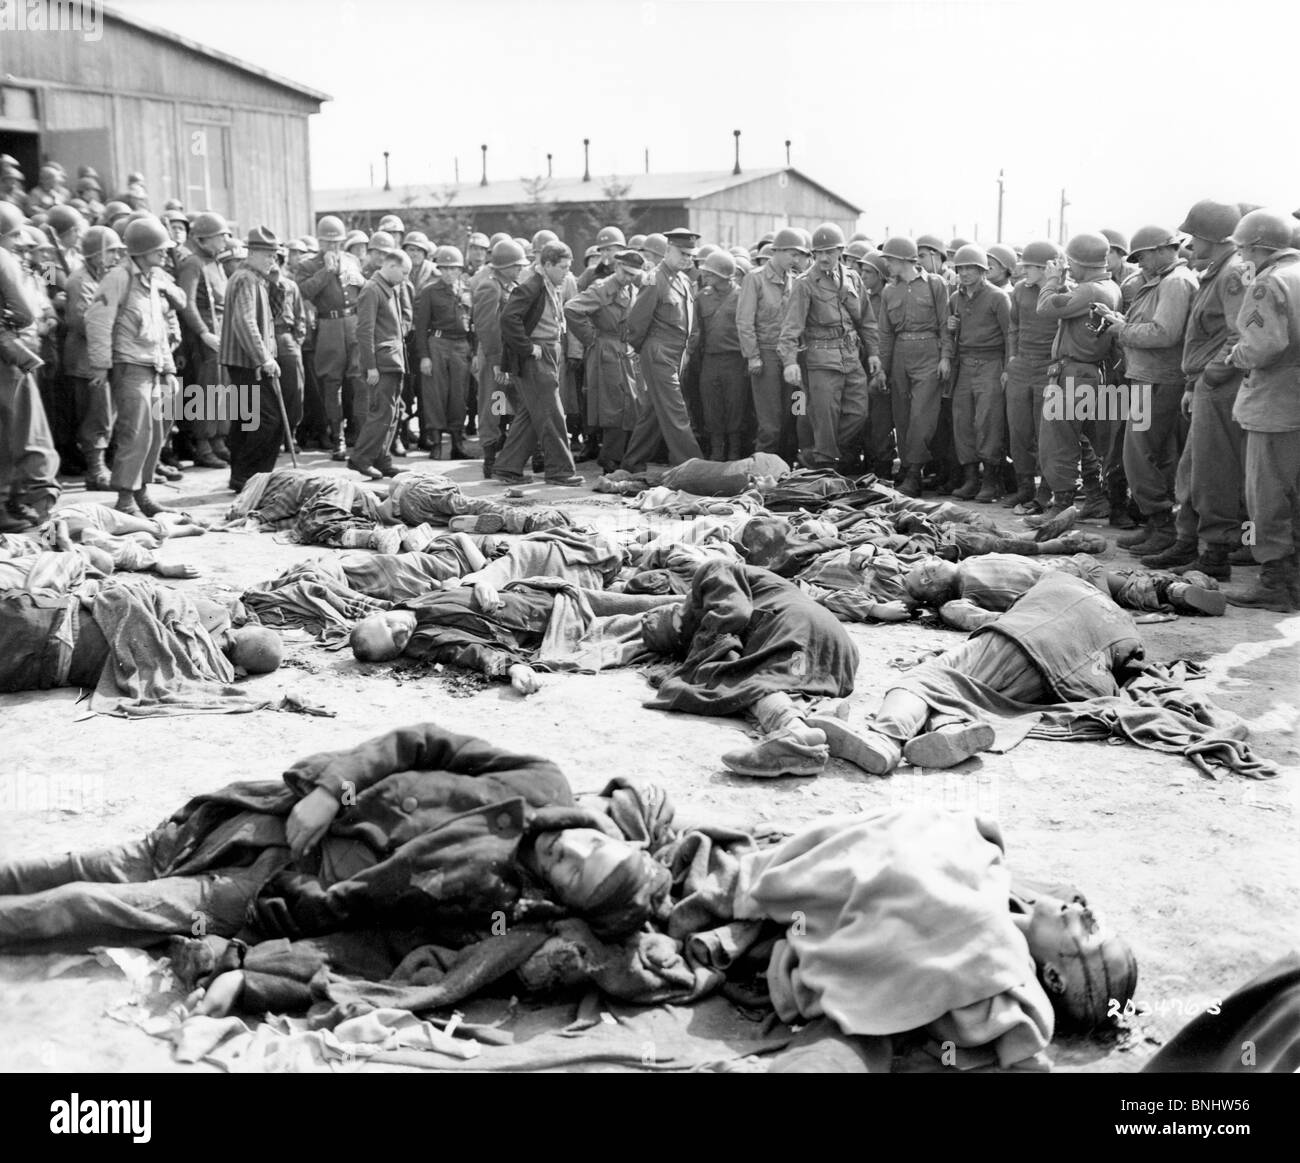 La Seconde Guerre mondiale, camp de travail forcé Ohrdruf camp de concentration de Buchenwald Shoah Allemagne Avril 1945 Historique Historique Histoire Banque D'Images